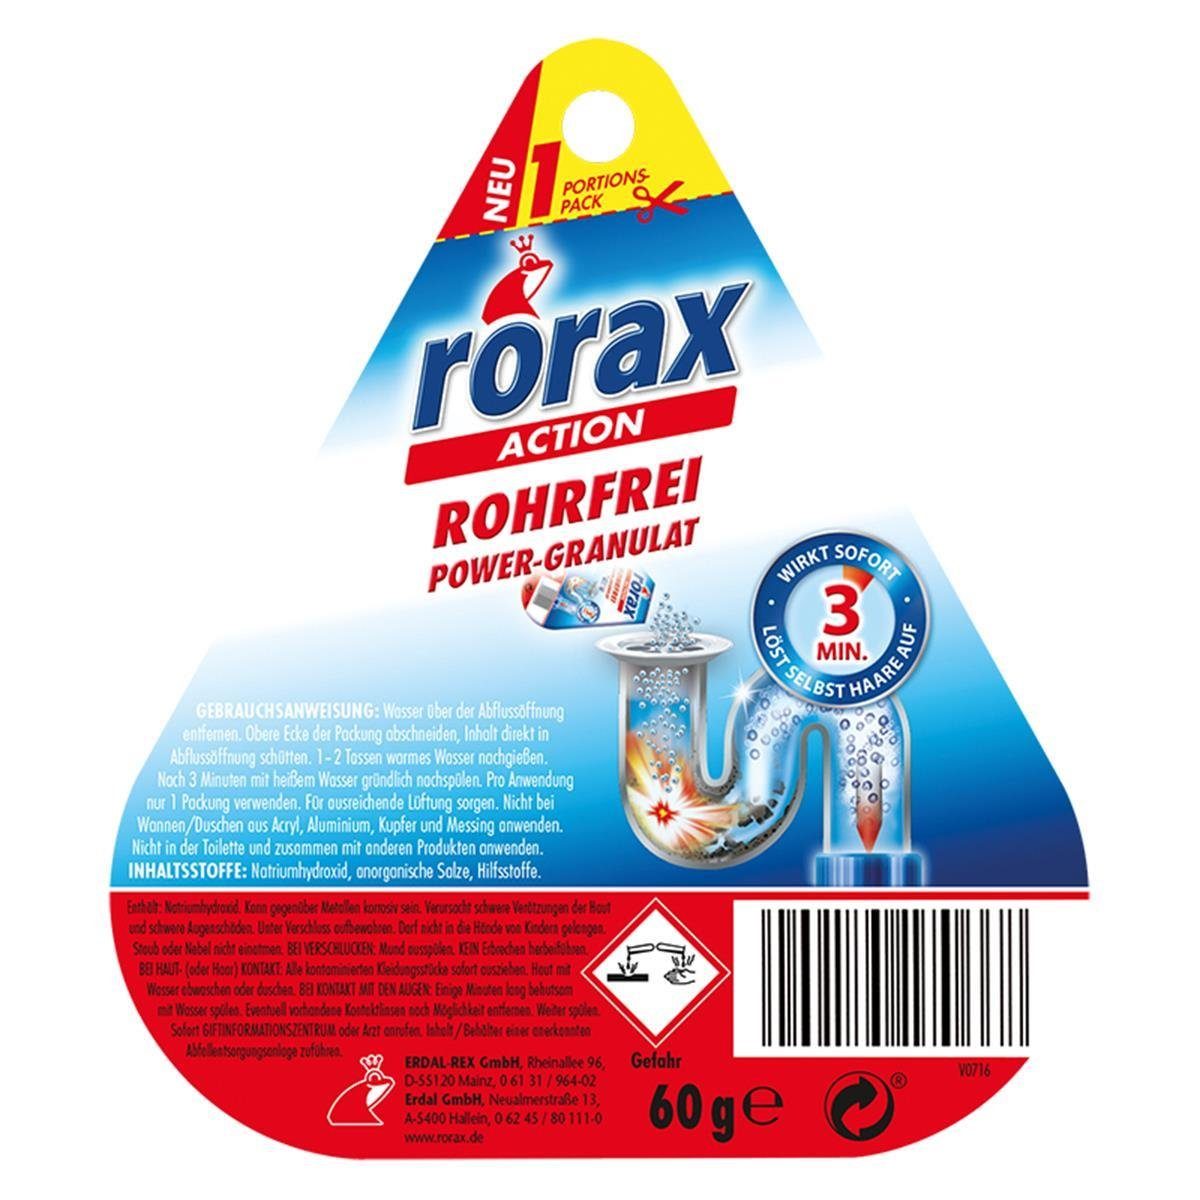 60g rorax & löst - s sofort Rohrfrei Power-Granulat Wirkt Portionspack Rohrreiniger rorax